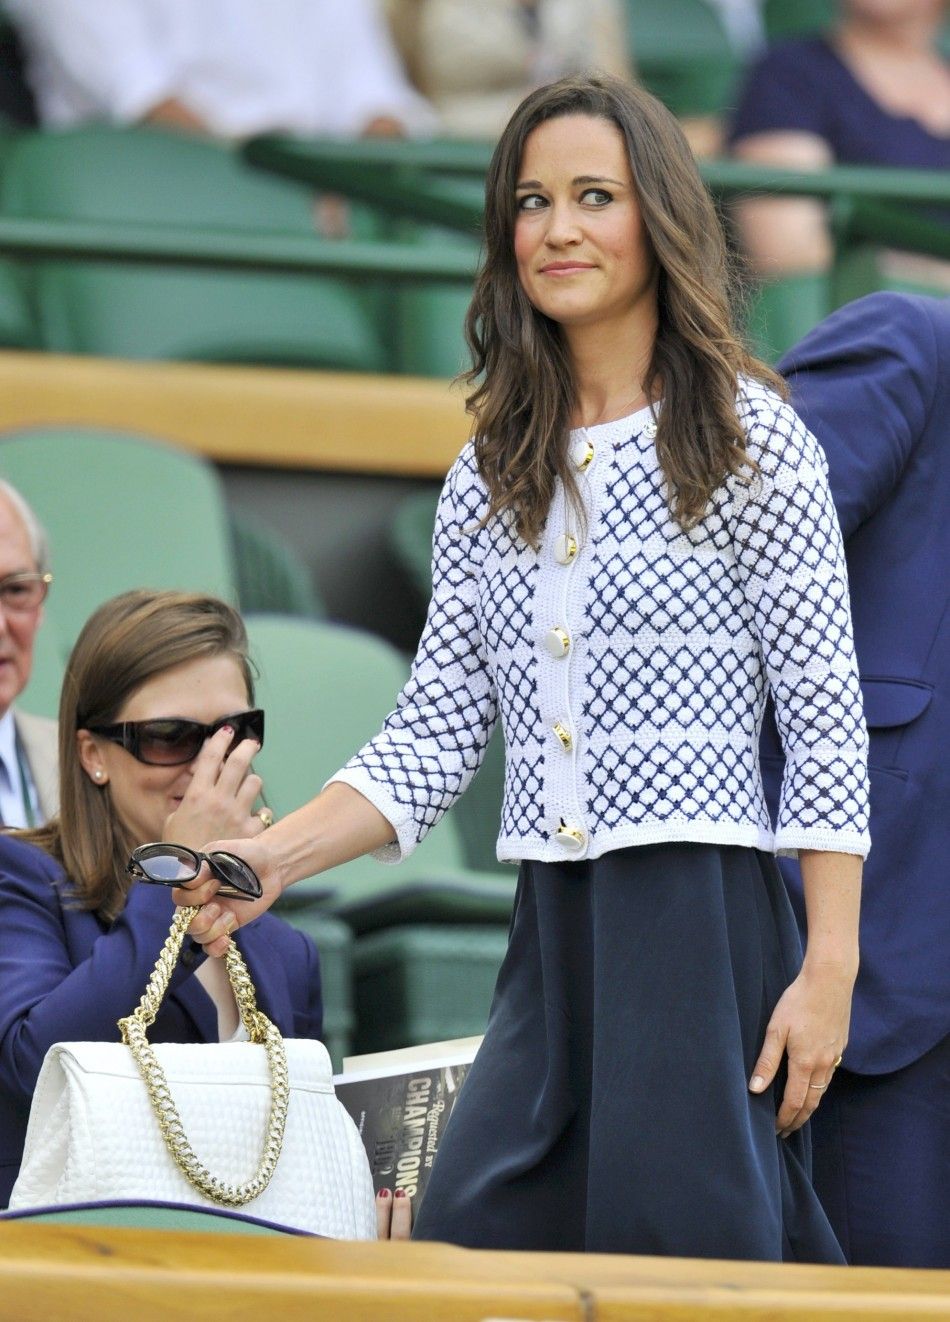 Pippa Middleton at Wimbledon 2012 